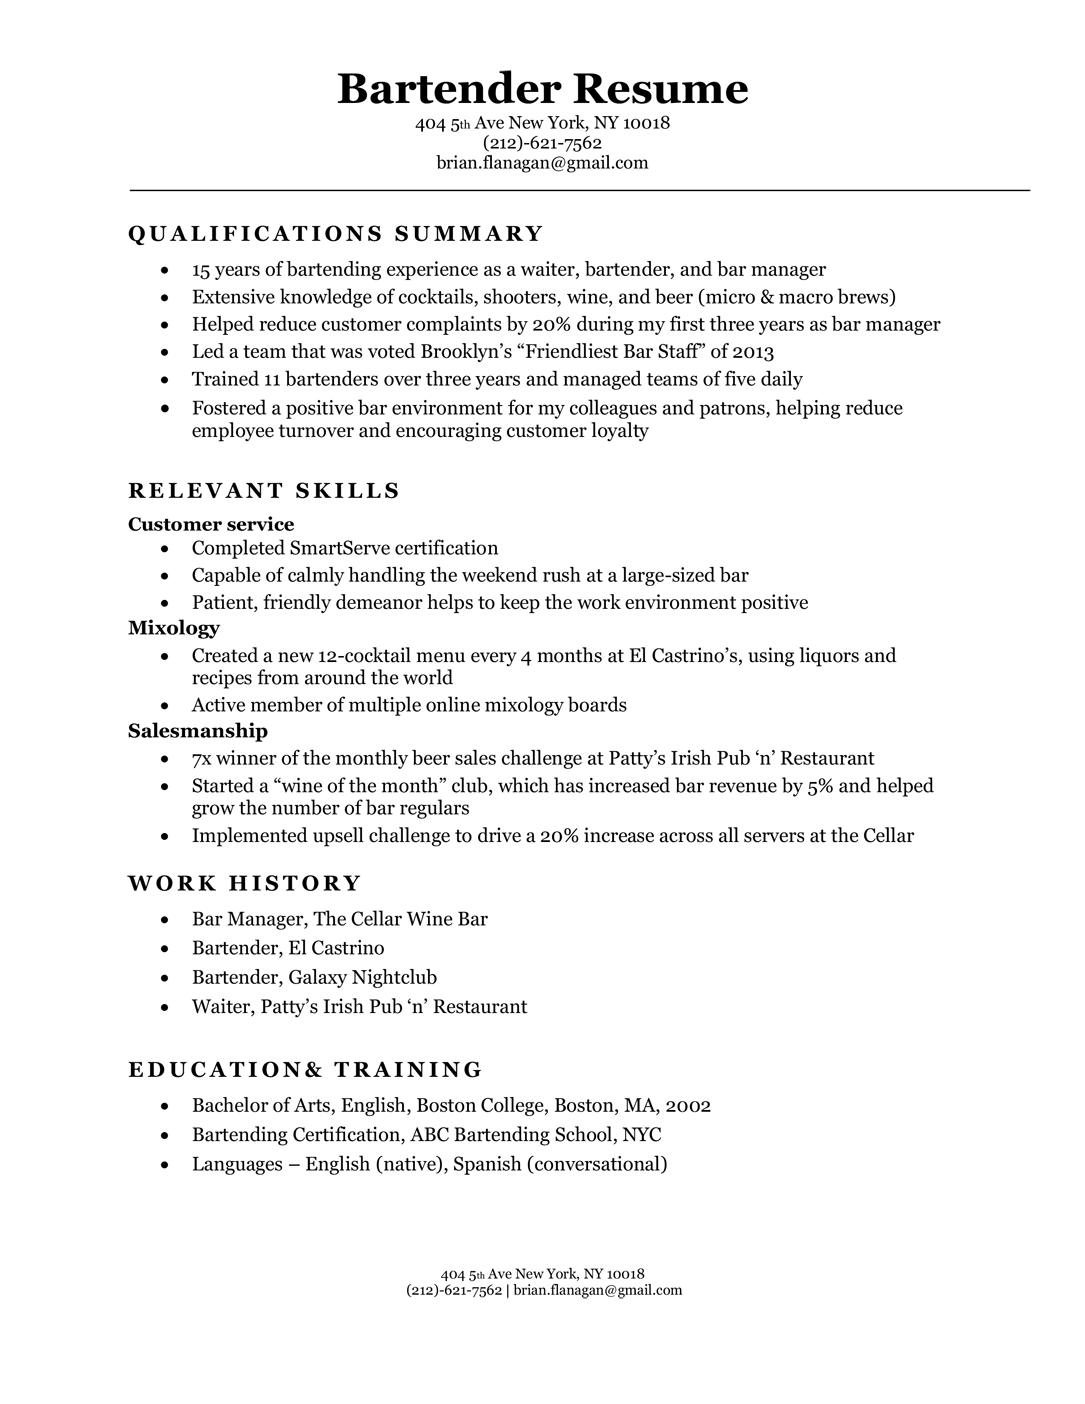 Bartender resume sample